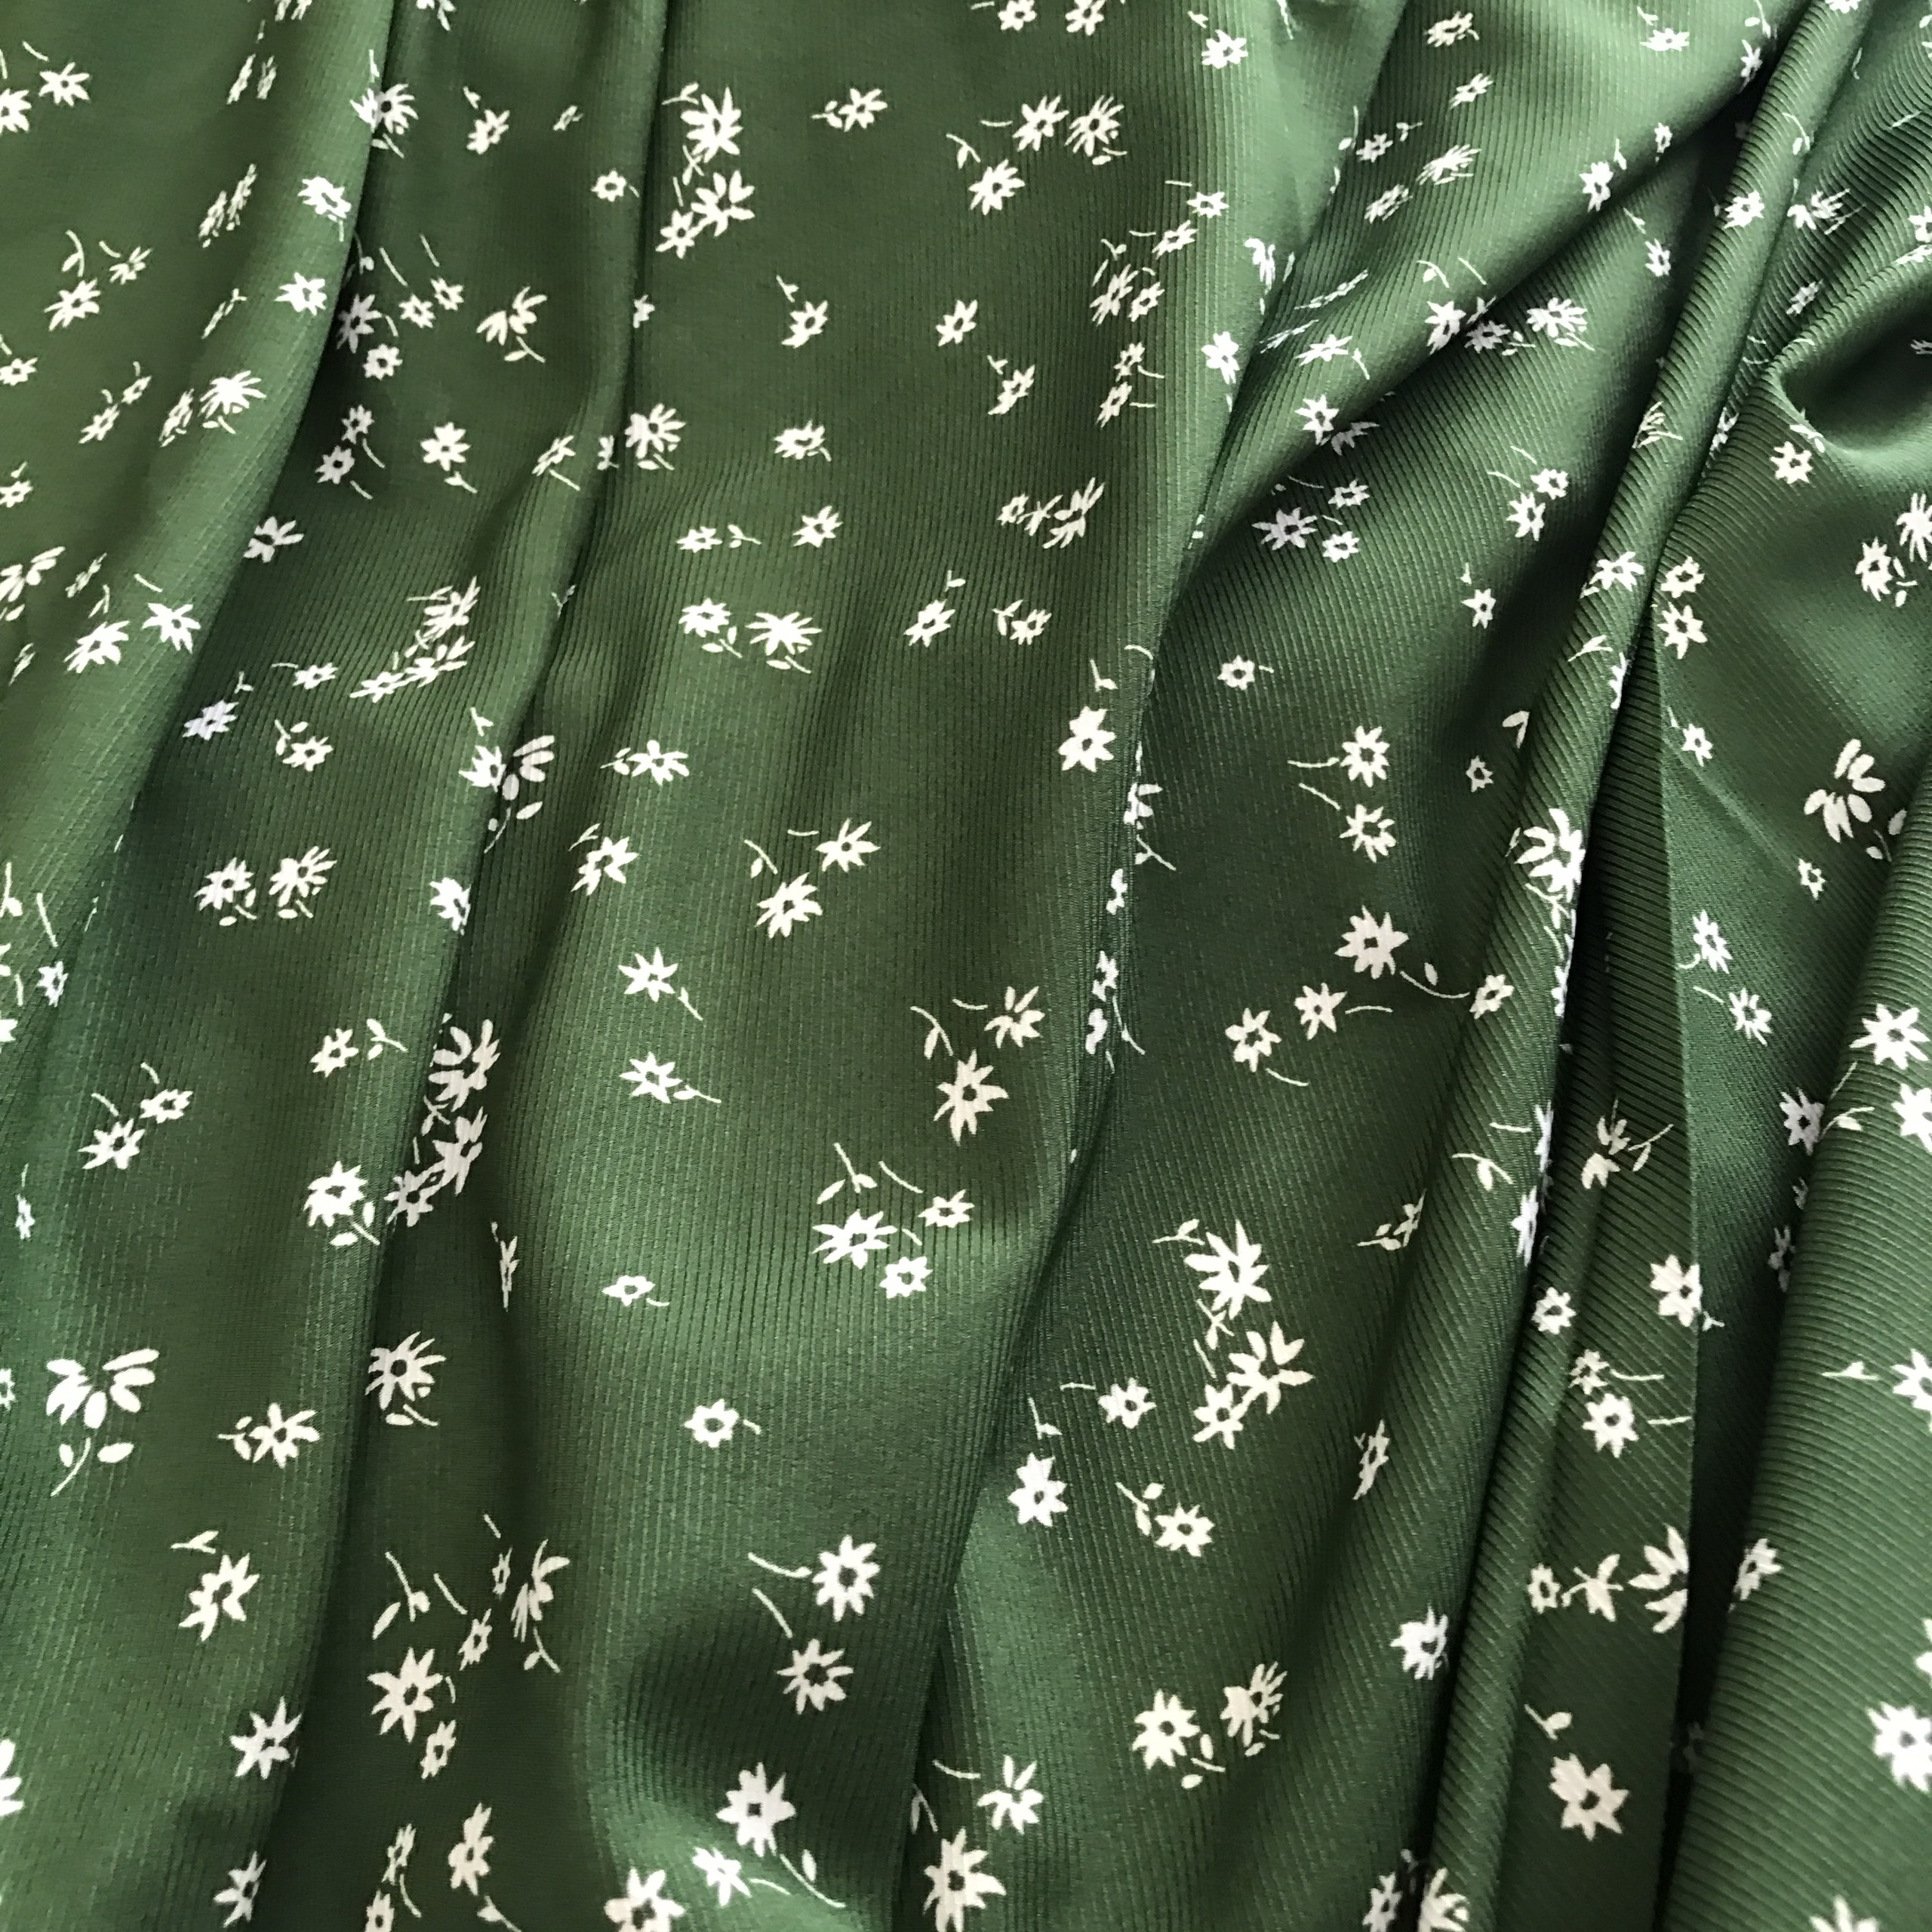 Vải lụa chéo co giãn nhẹ 4 chiều họa tiết hoa nhí nền xanh rêu